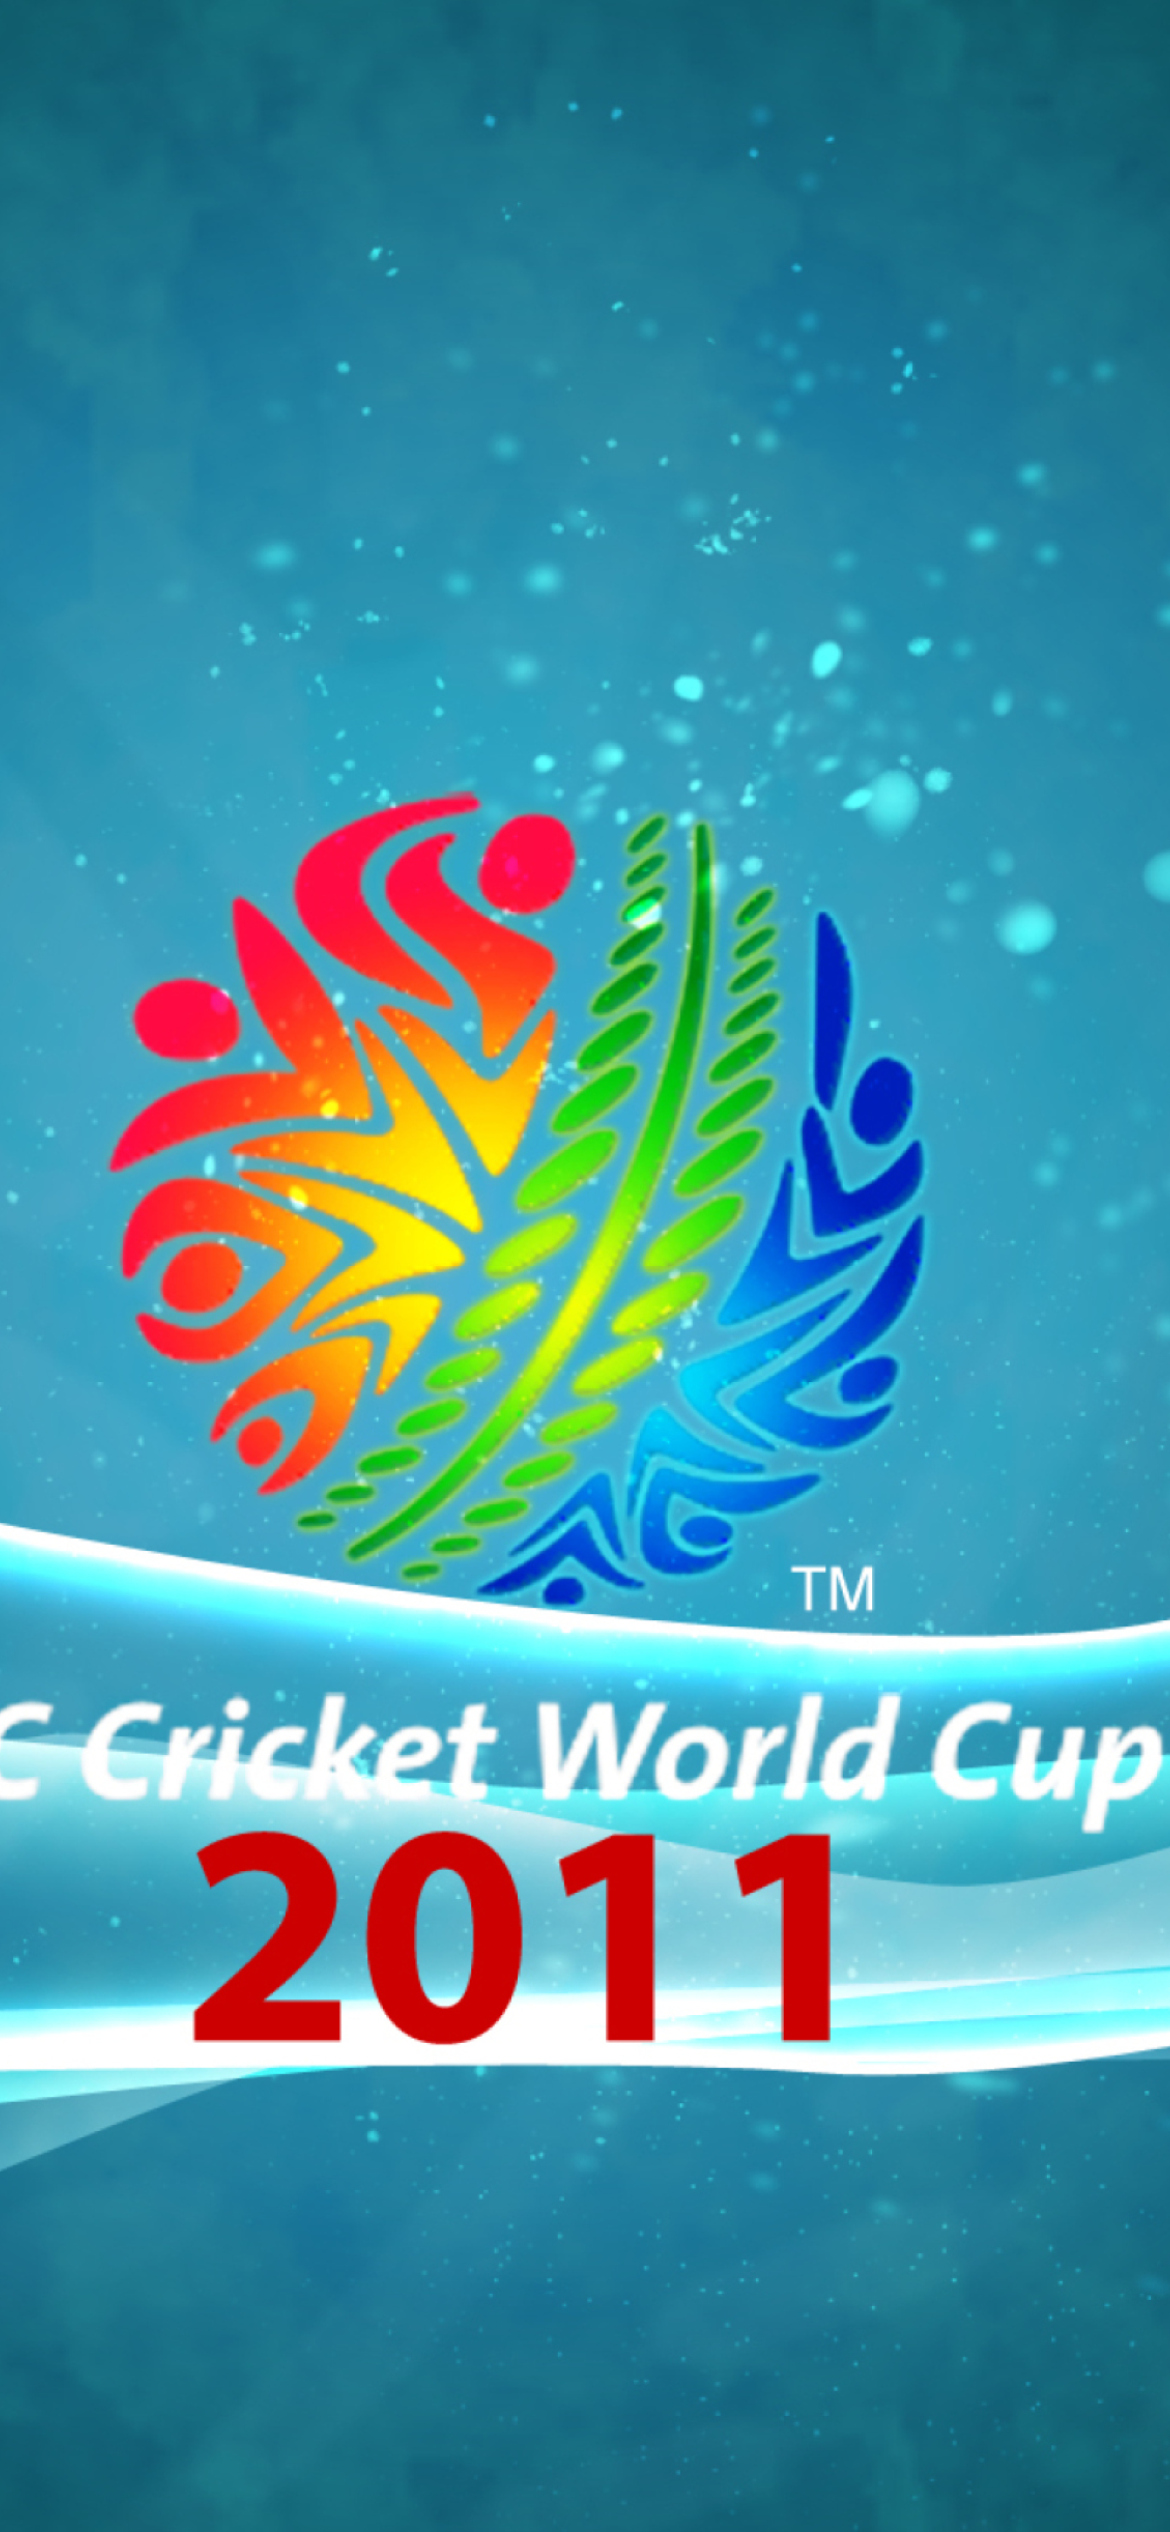 Cricket World Cup 2011 screenshot #1 1170x2532